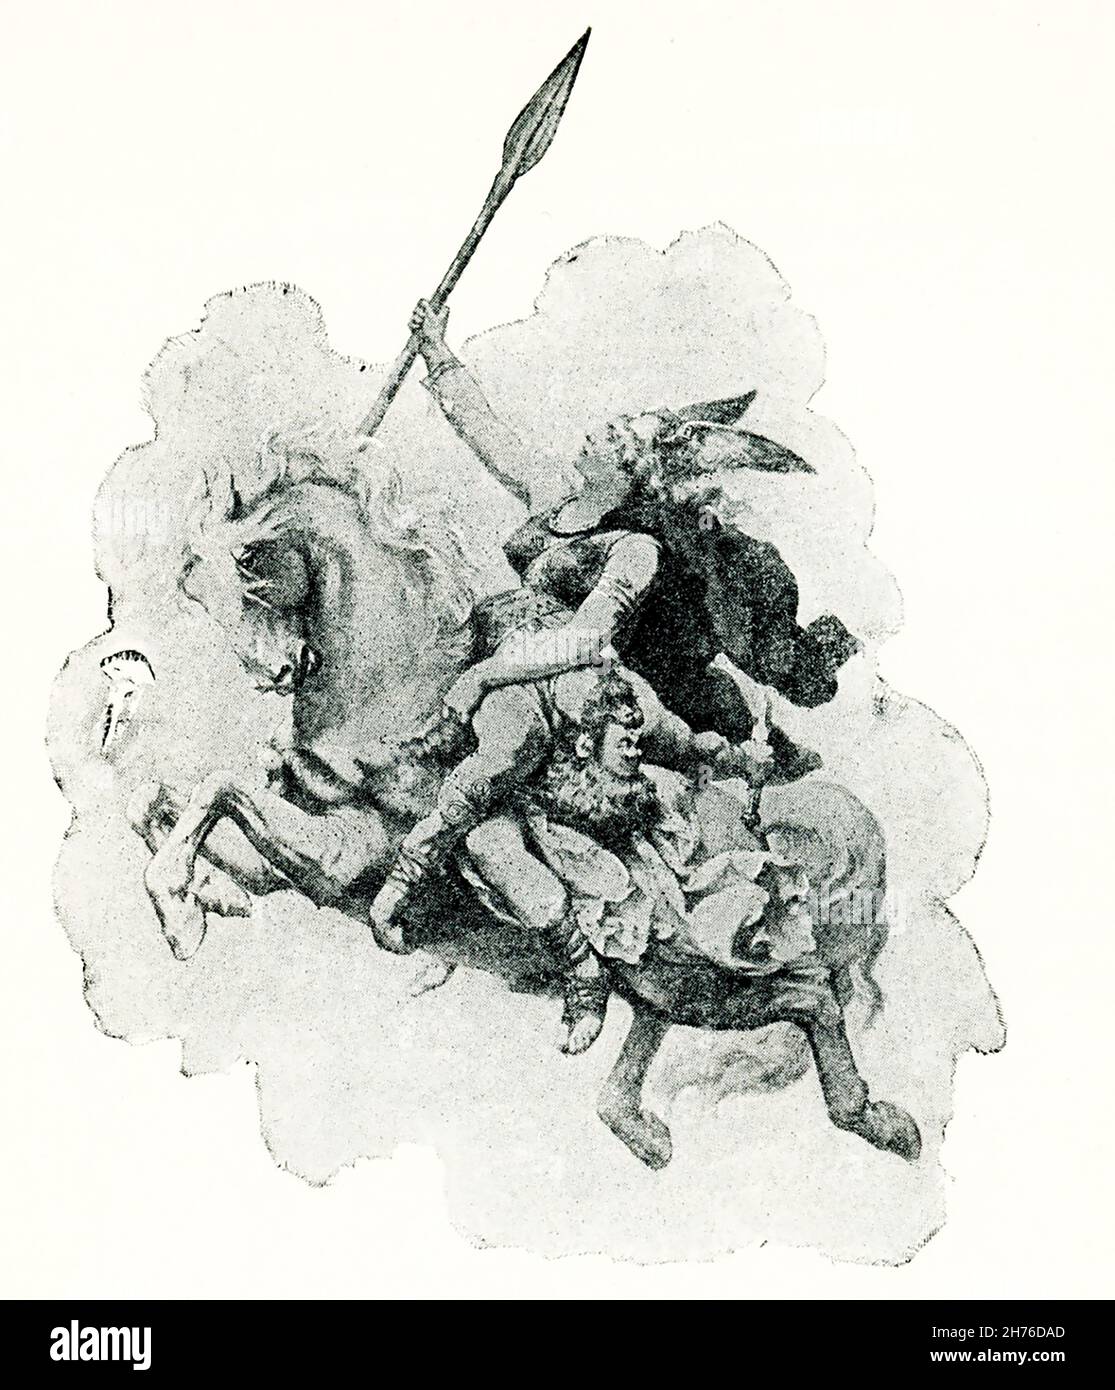 Questa immagine mostra una Valkyrie che porta un eroe per valhalla. Il dipinto è di K Dielitz. Secondo la mitologia norrena, le Valkyries erano le figlie o i frequentatori di Odino, il dio principale (chiamato anche Wotan). I Norse credevano che le Valkyries arrivarono sul campo di battaglia, scelsero quelli che sarebbero morti e li riportarono a Valhalla (un guerriero caduto può essere visto qui di fronte a una Valkyrie). Il loro capo era Brynhild (anche scritto Brunhild, Brunhilde, Brynhildr). Konrad Dielitz (1933) è stato un pittore tedesco di alto rango. Nacque nel 1845 a Berlino, ed era figlio di un noto Foto Stock